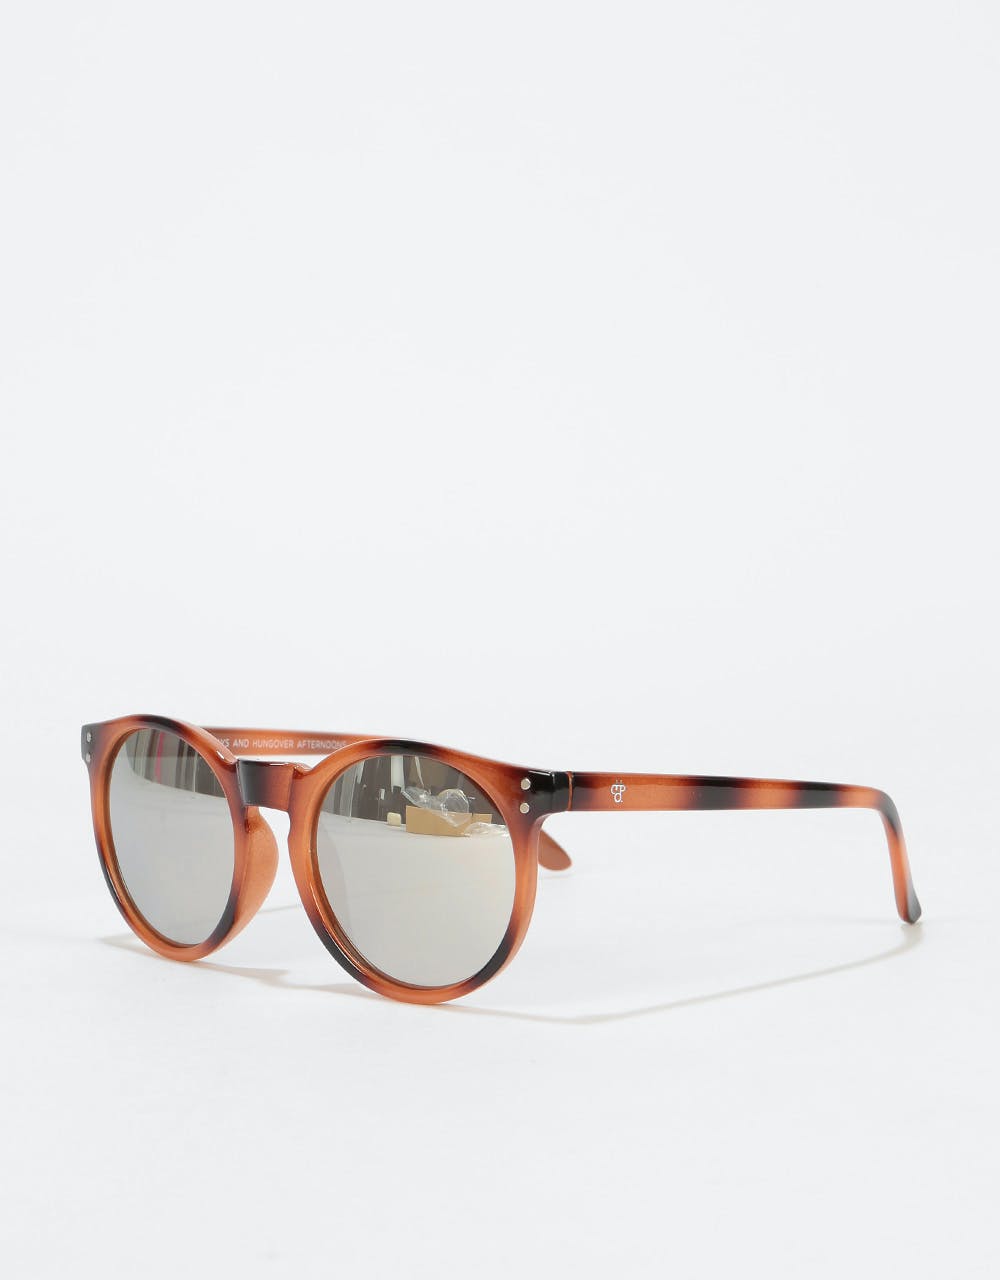 CHPO Trestles Sunglasses - Brown/Silver Mirror